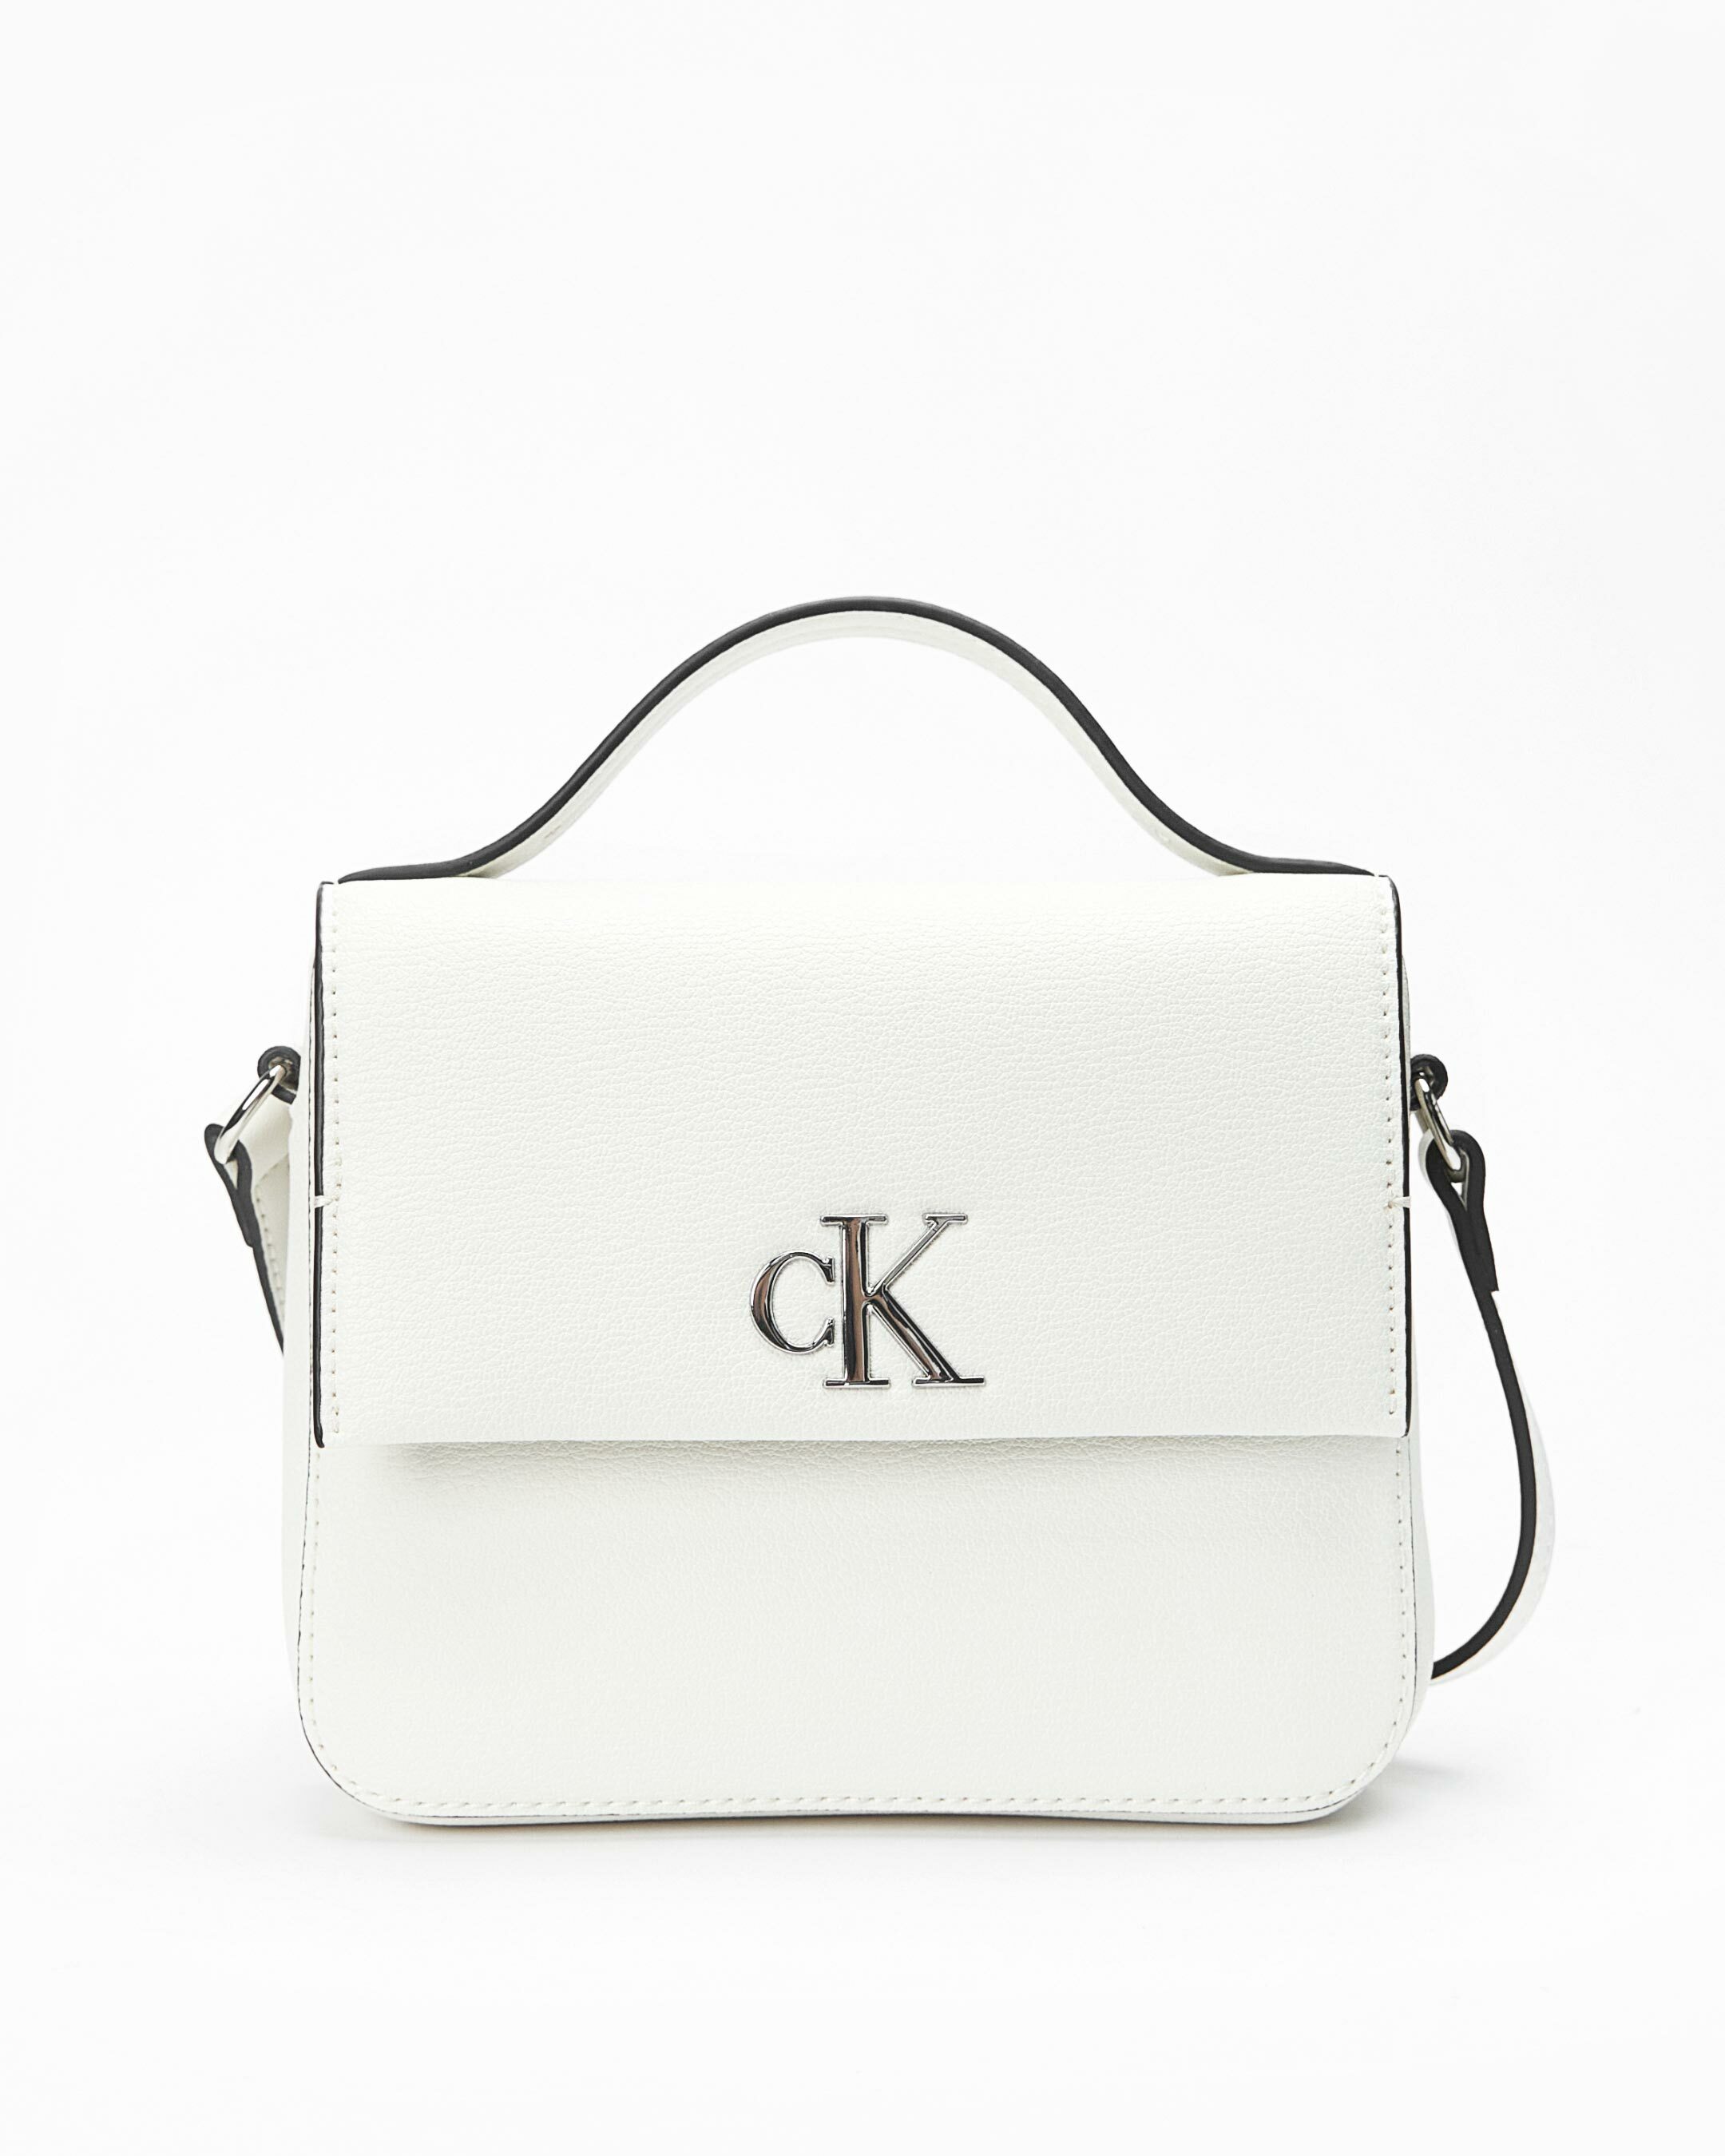 Calvin Klein Ck Jeans Minimal Monogram Shoulder Bag Black - Buy At Outlet  Prices!